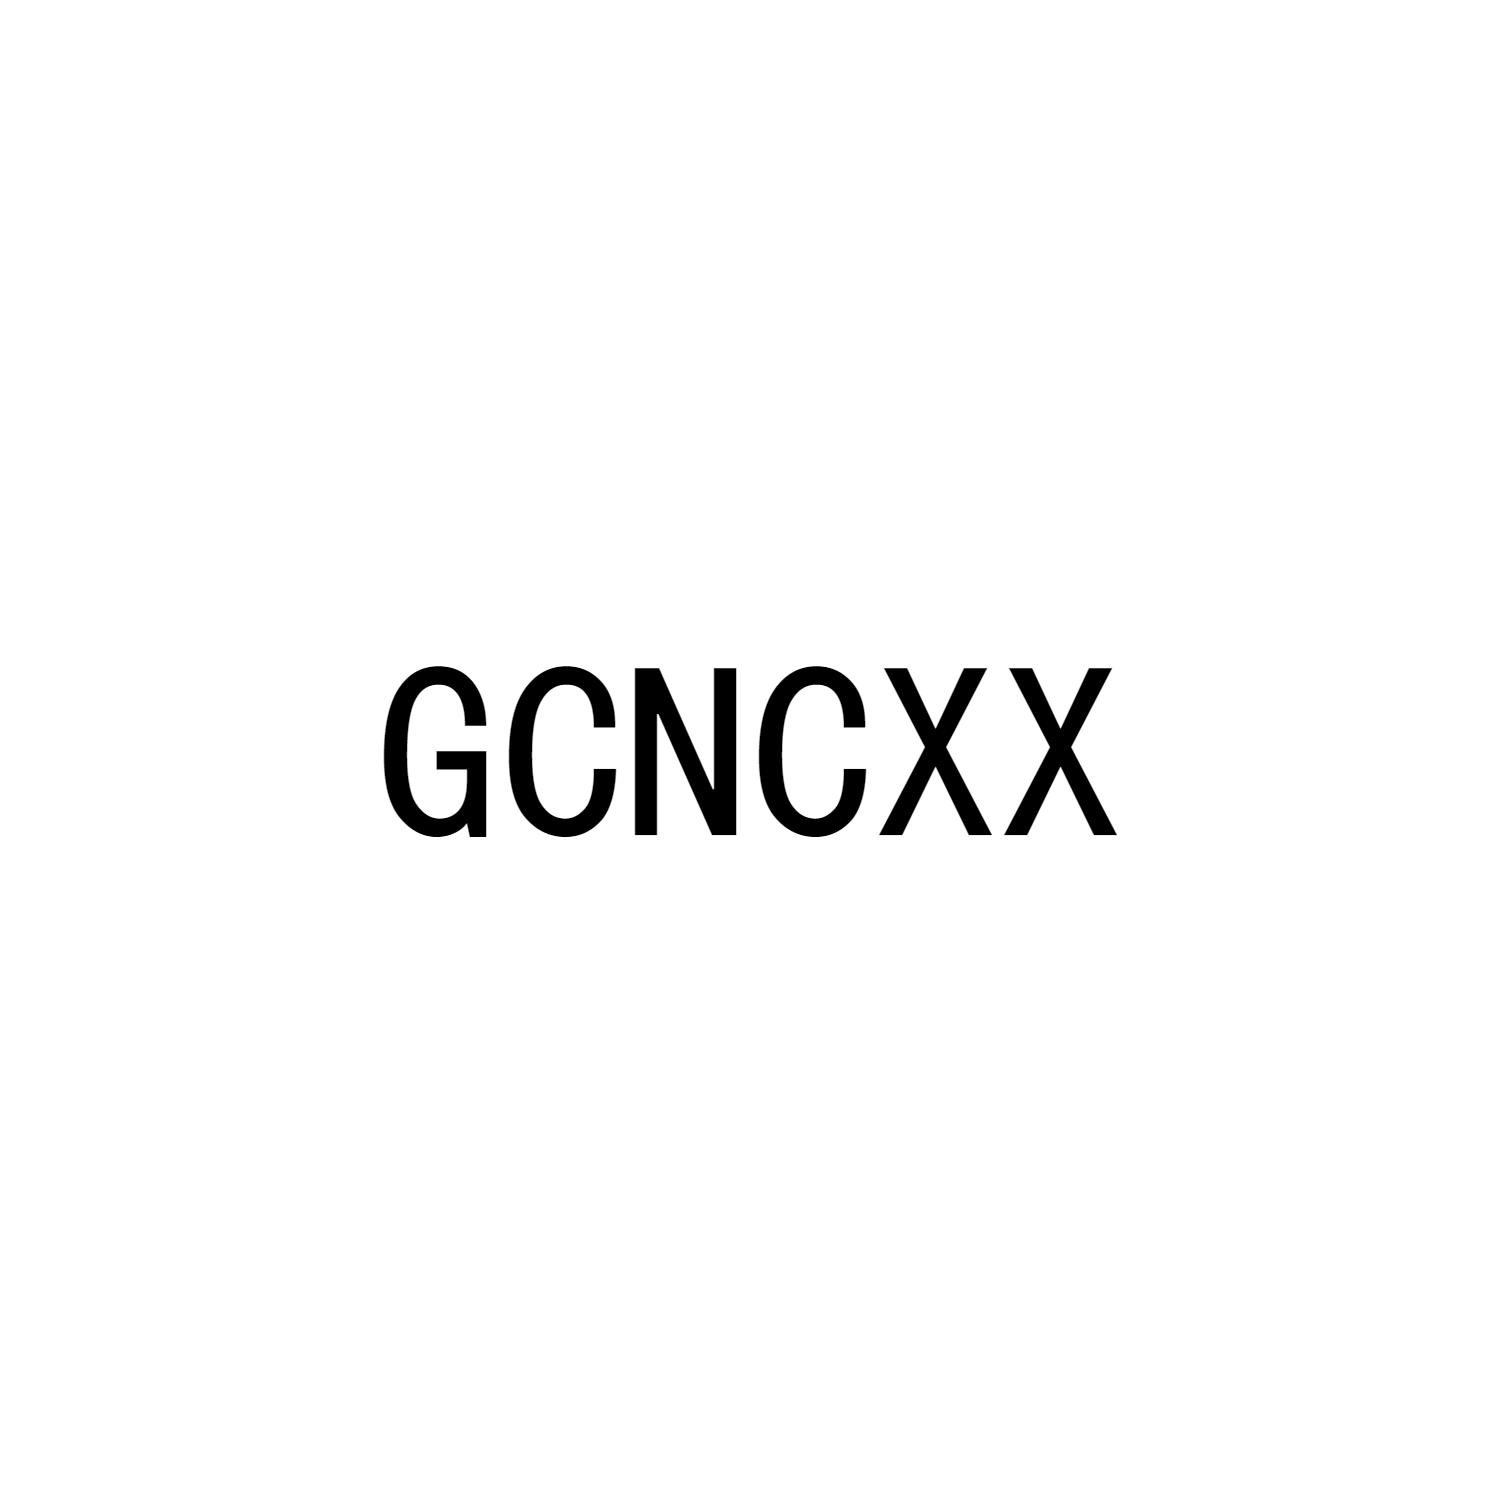 GCNCXX